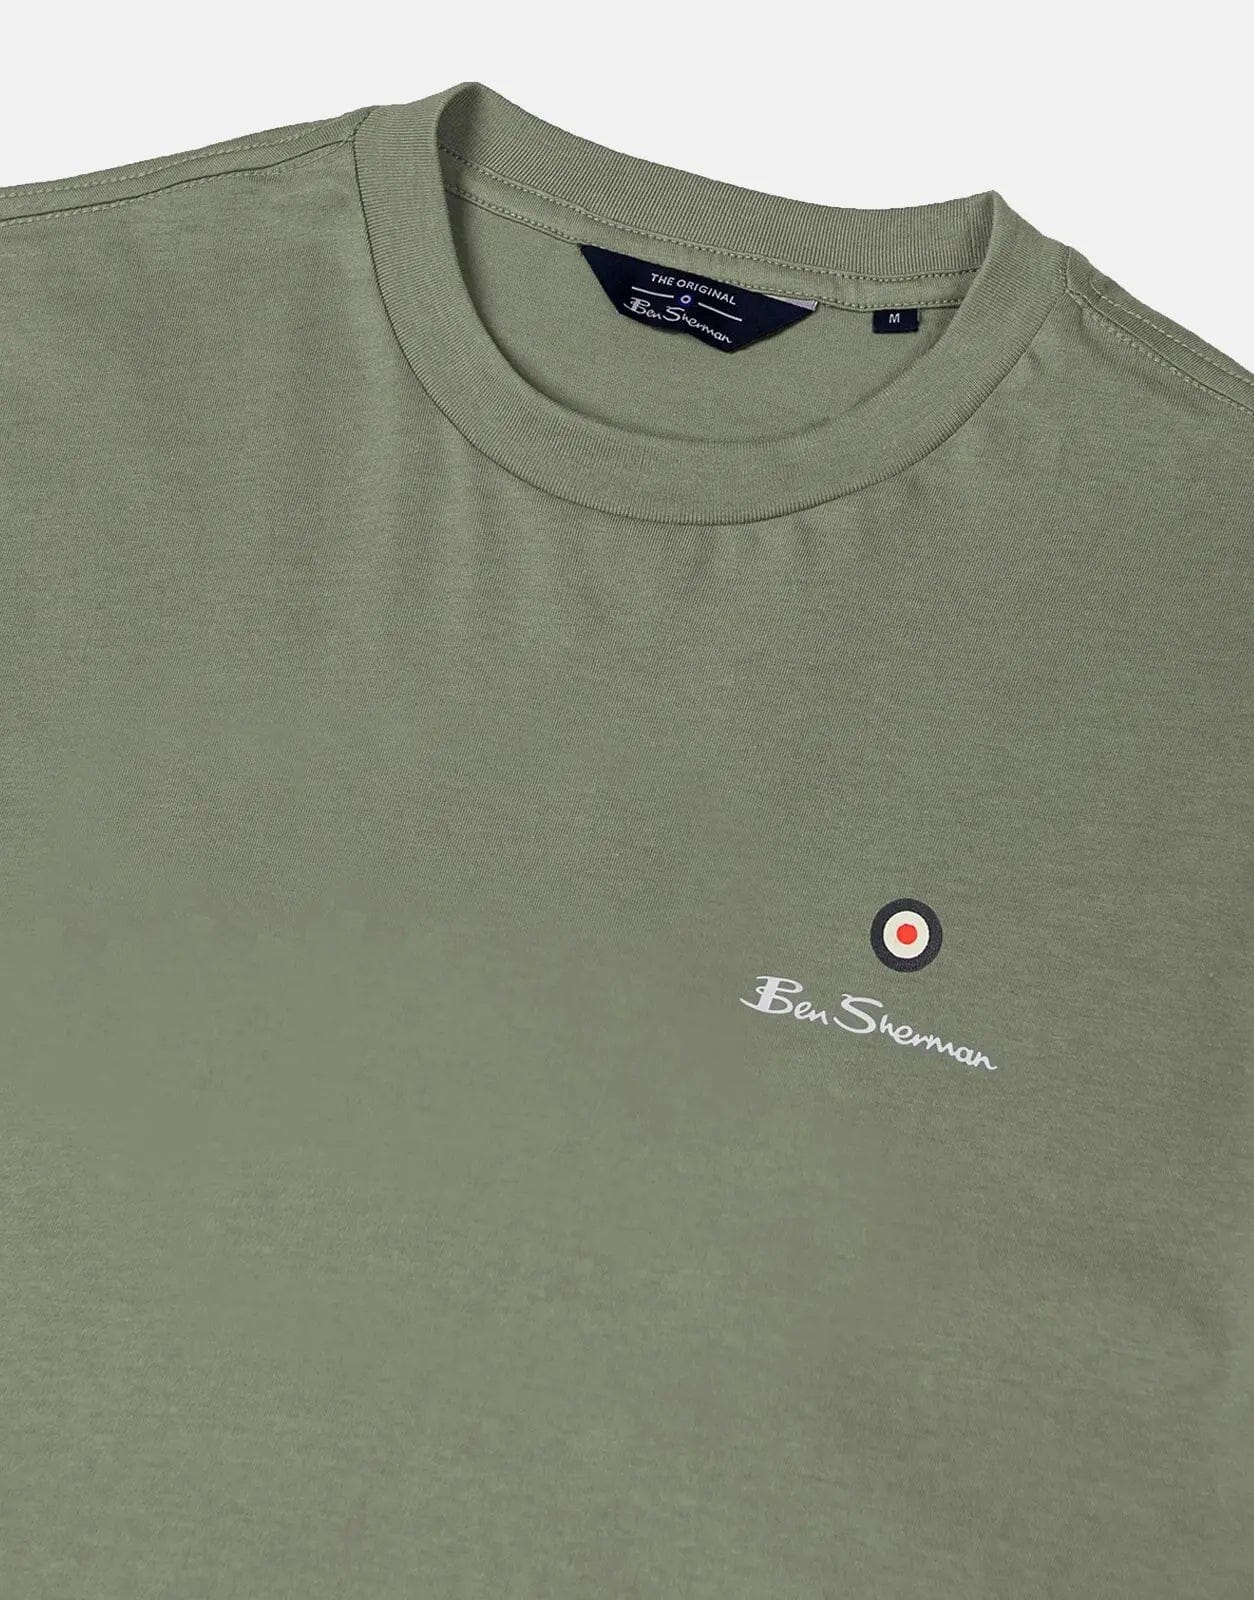 Ben Sherman Green Entry Target Print Crew T-Shirt - Subwear